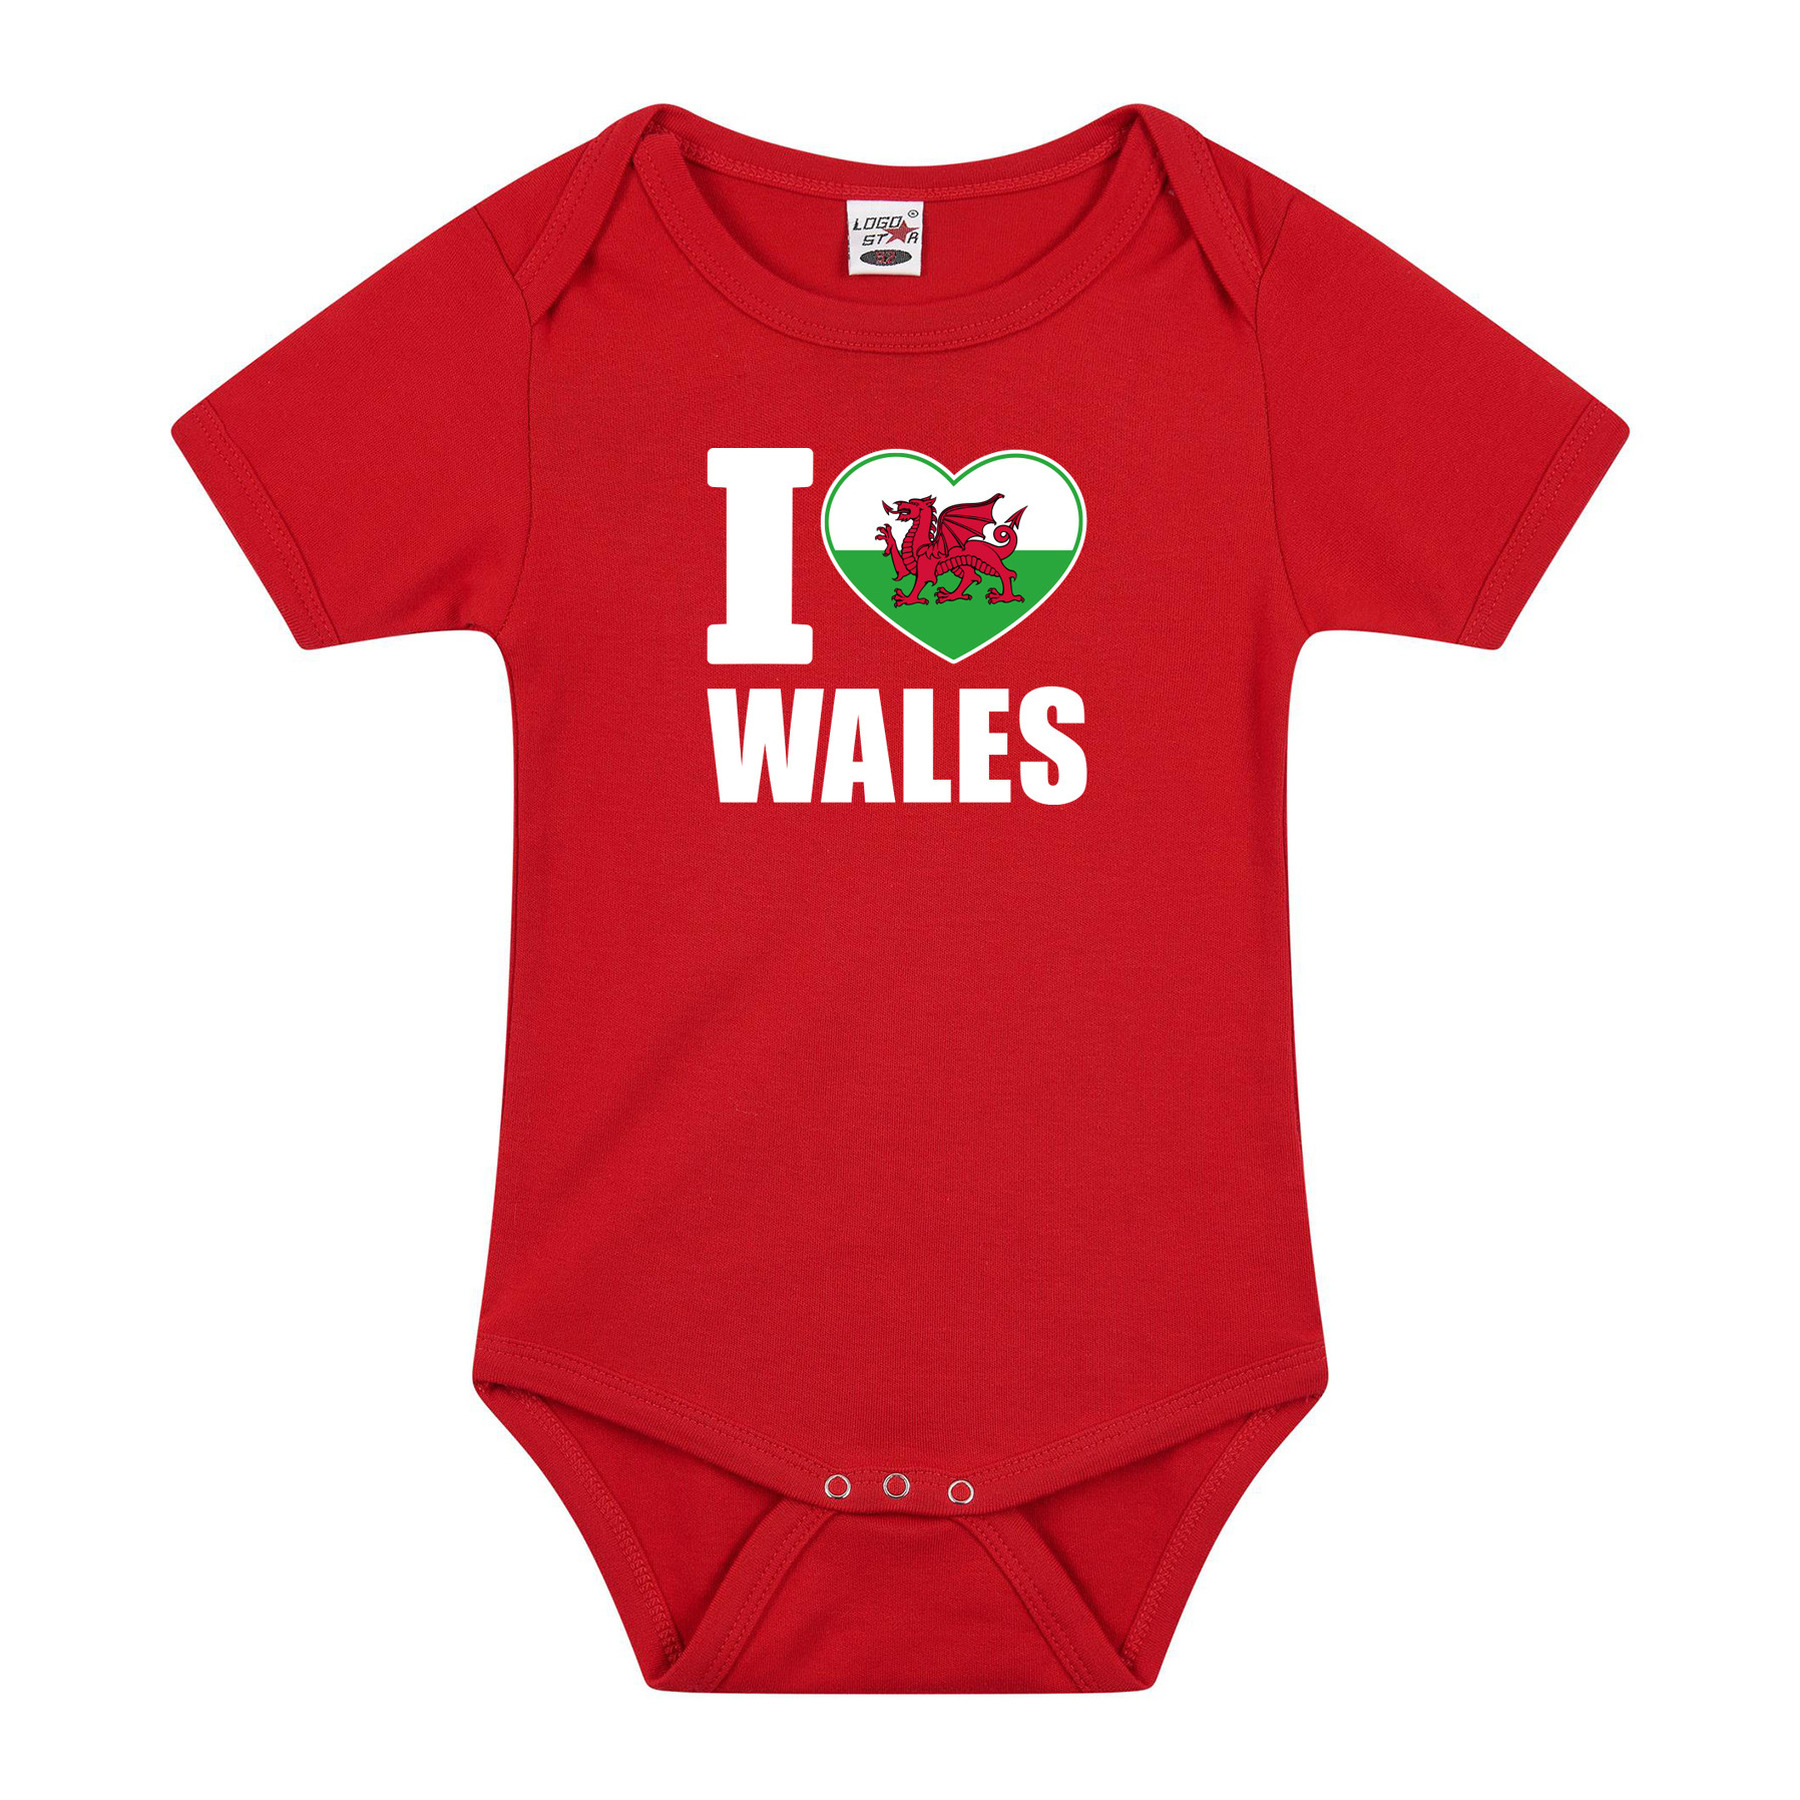 I love Wales baby rompertje rood jongen/meisje